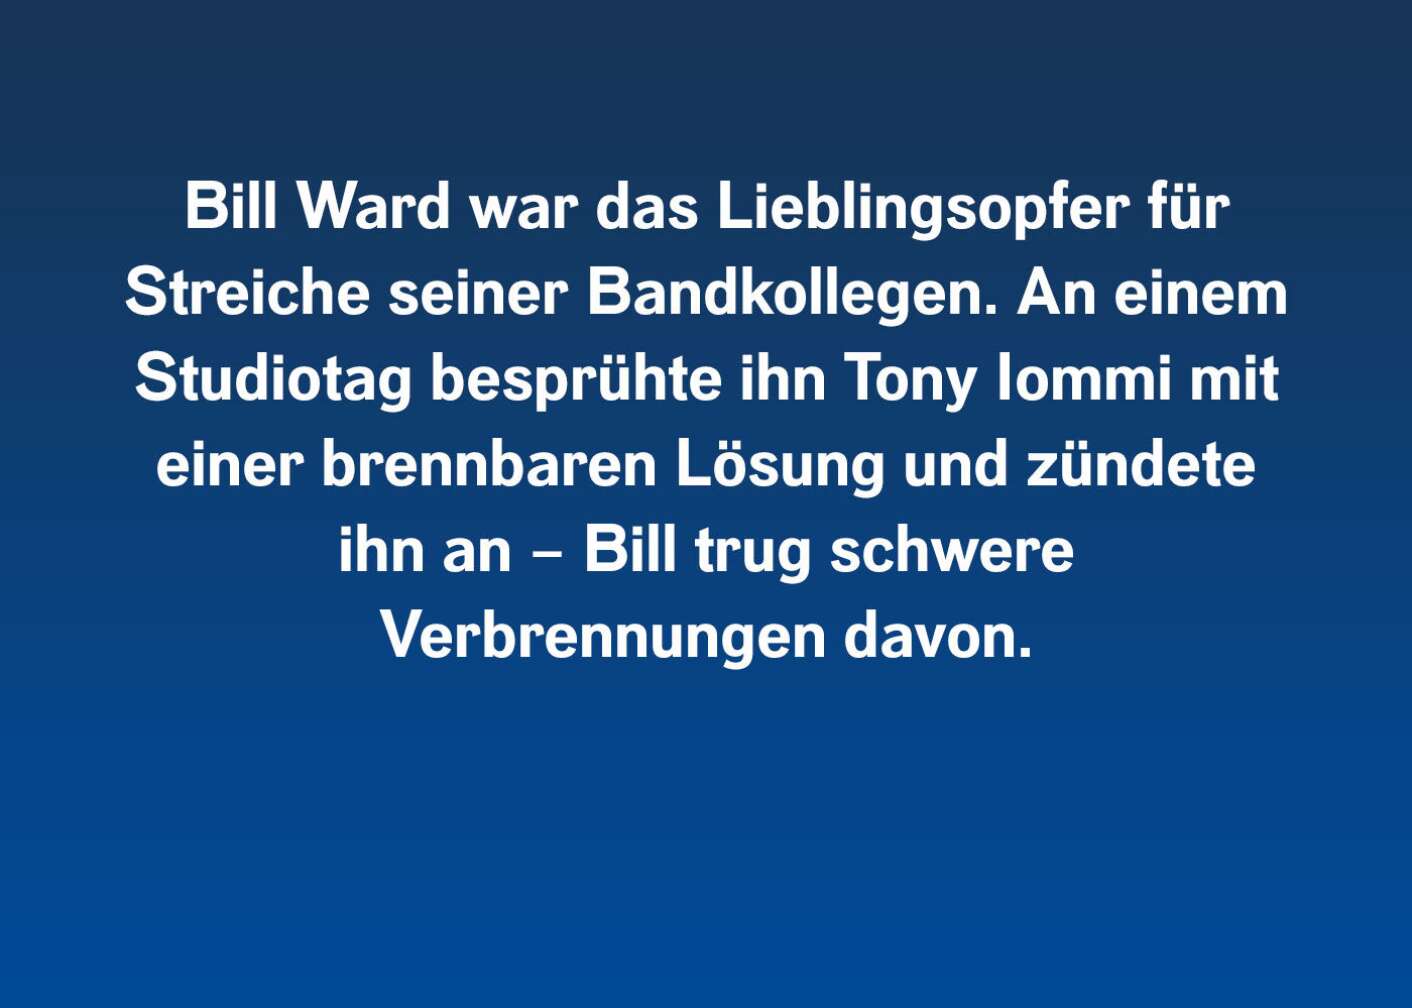 Fakt über Bill Ward als Fließtext